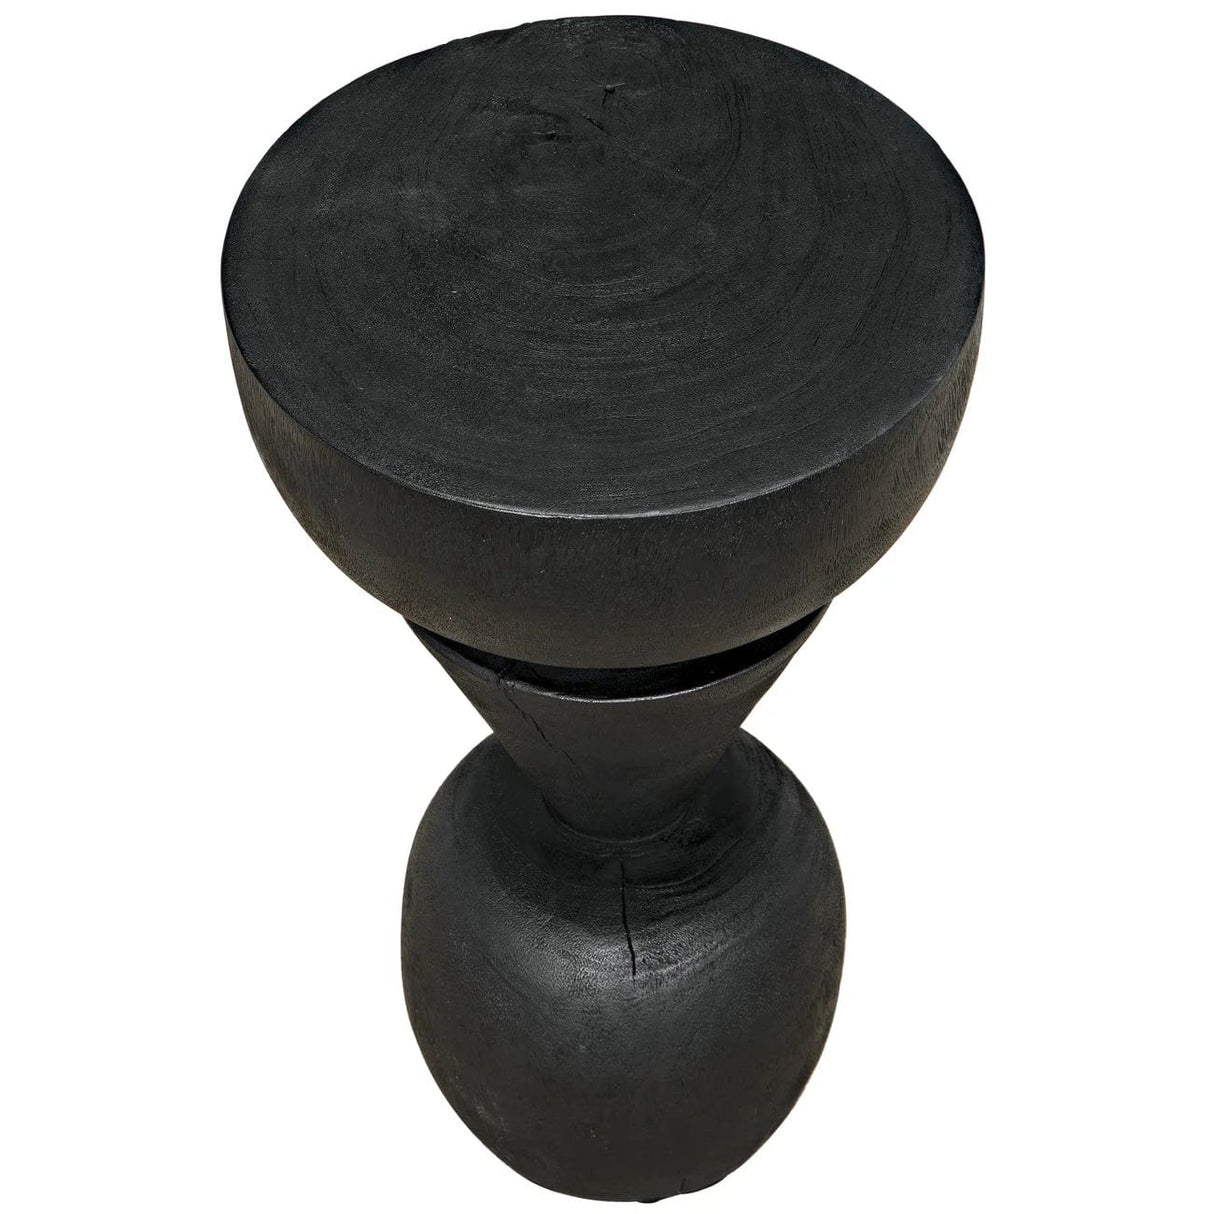 Noir Nogozi Side Table Furniture noir-AW-48BB 00842449134324